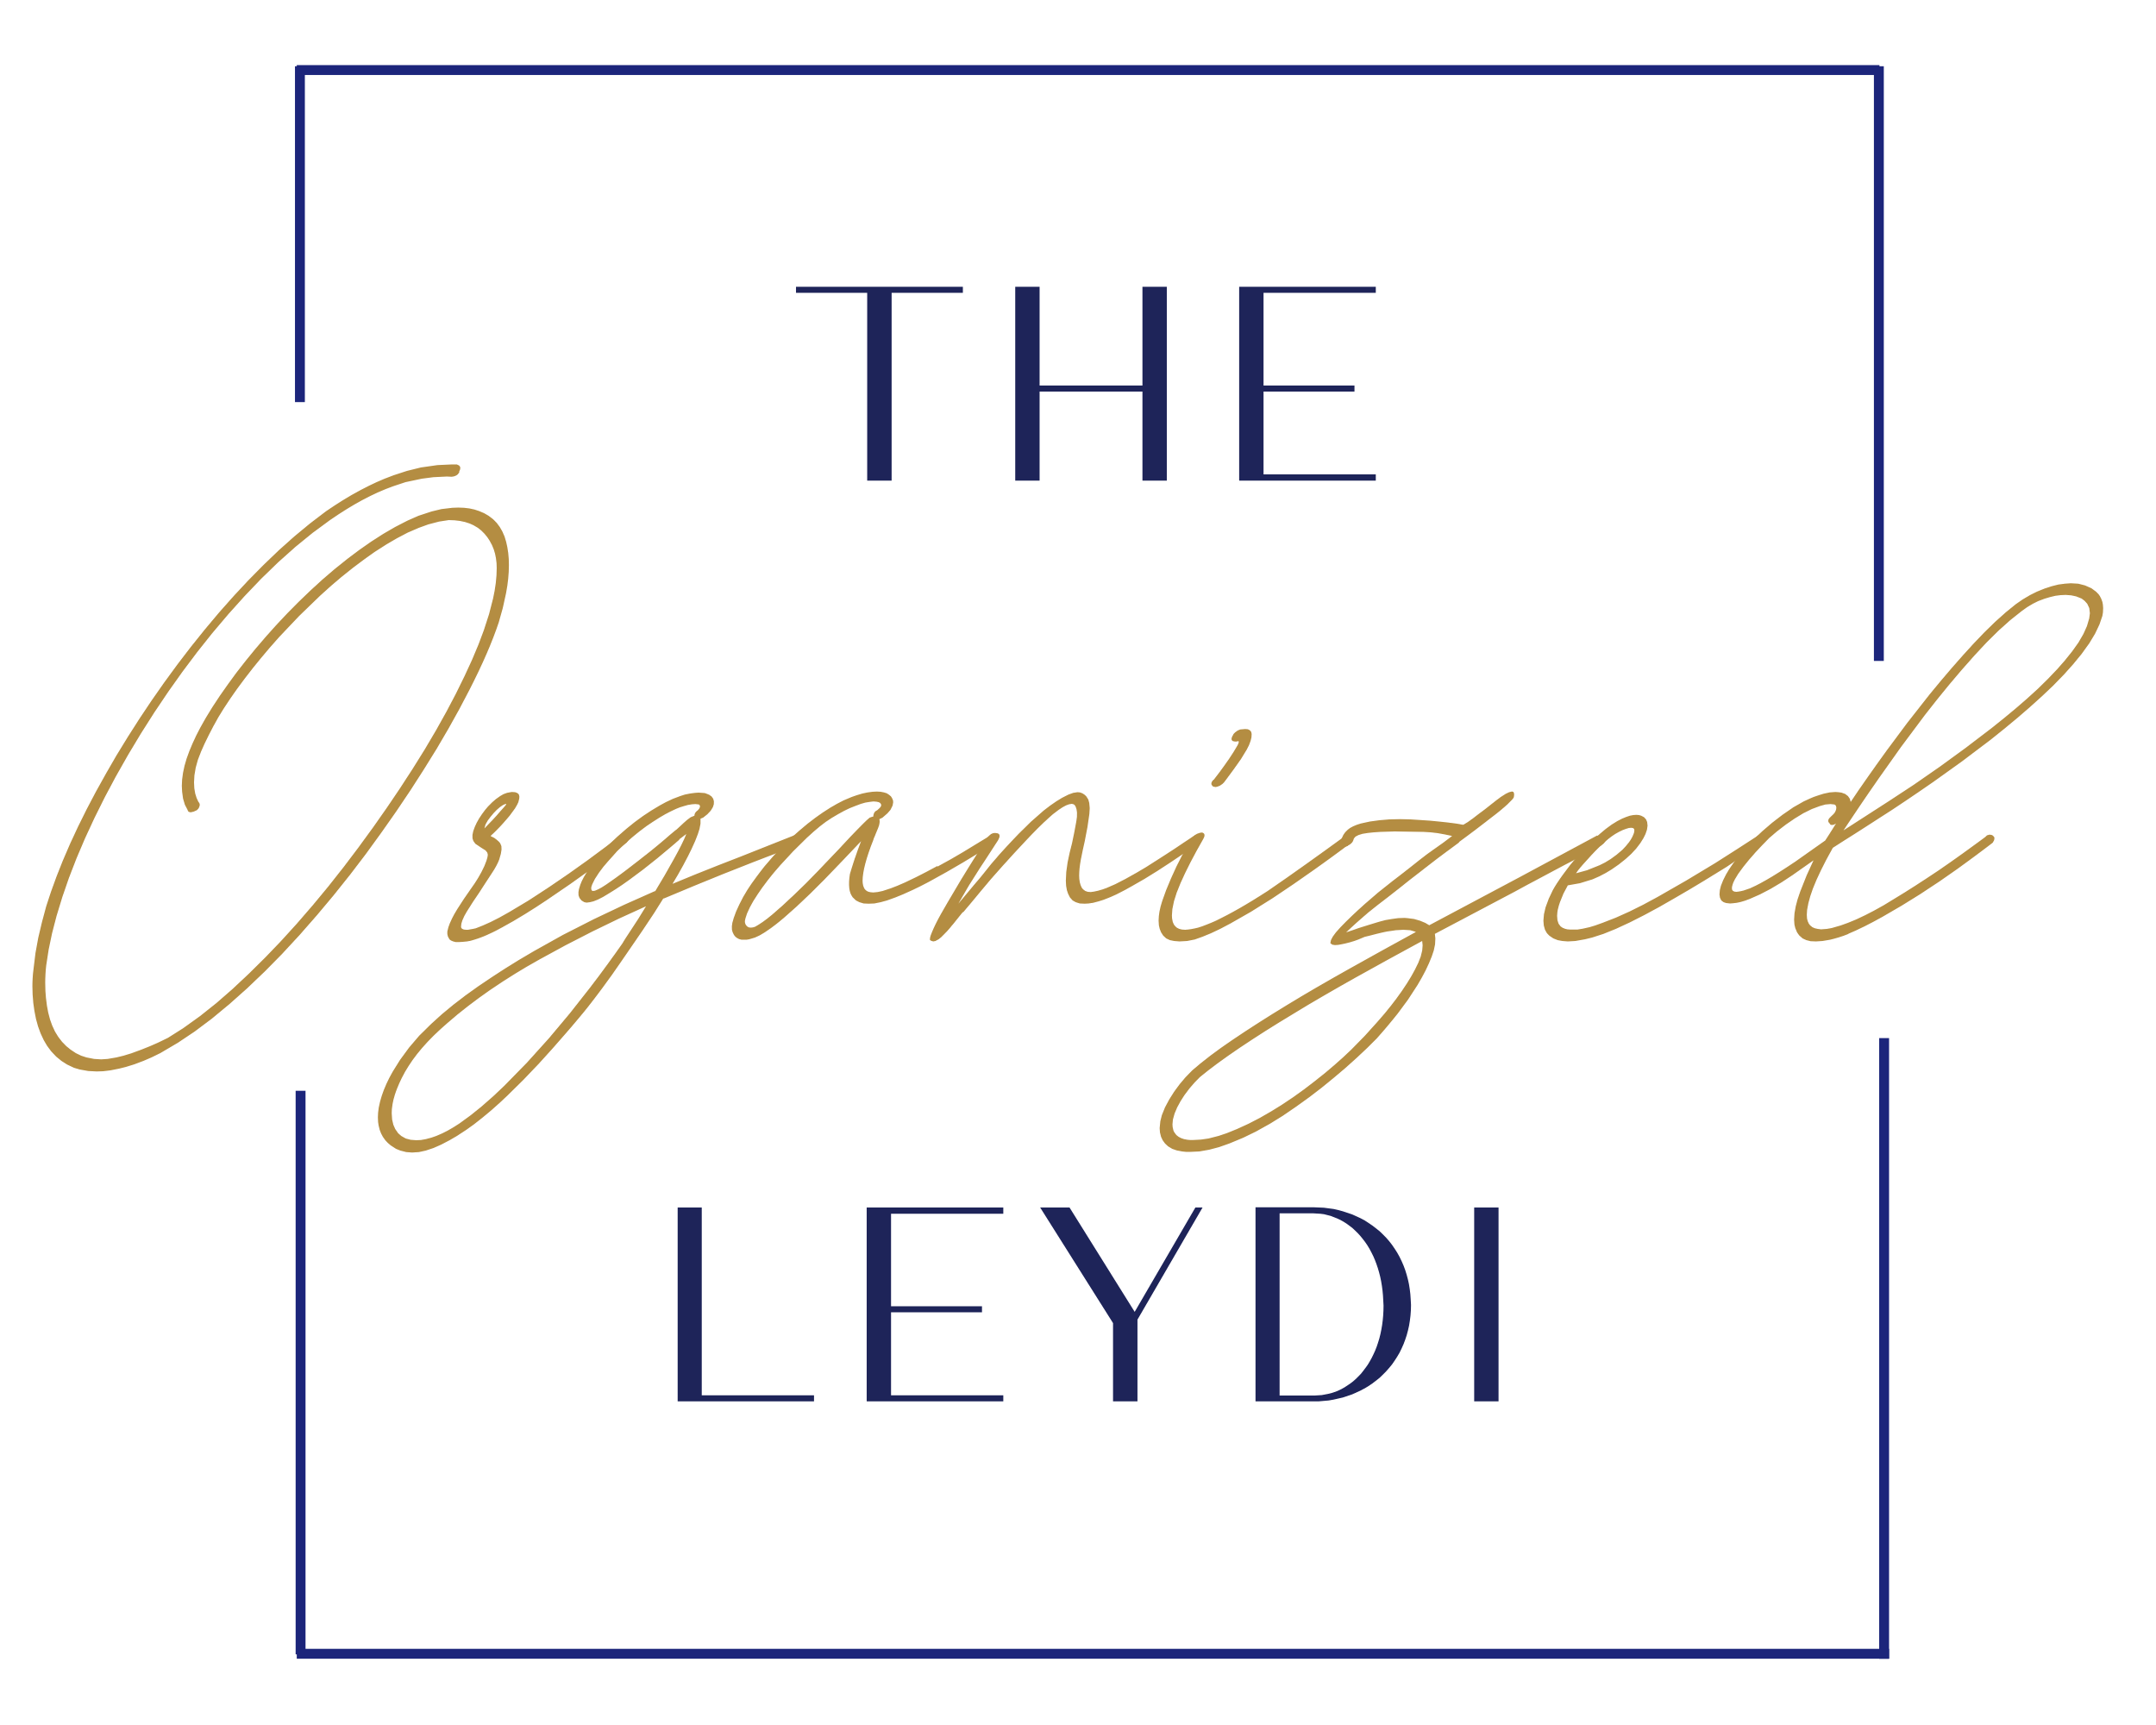 The Organized Leydi